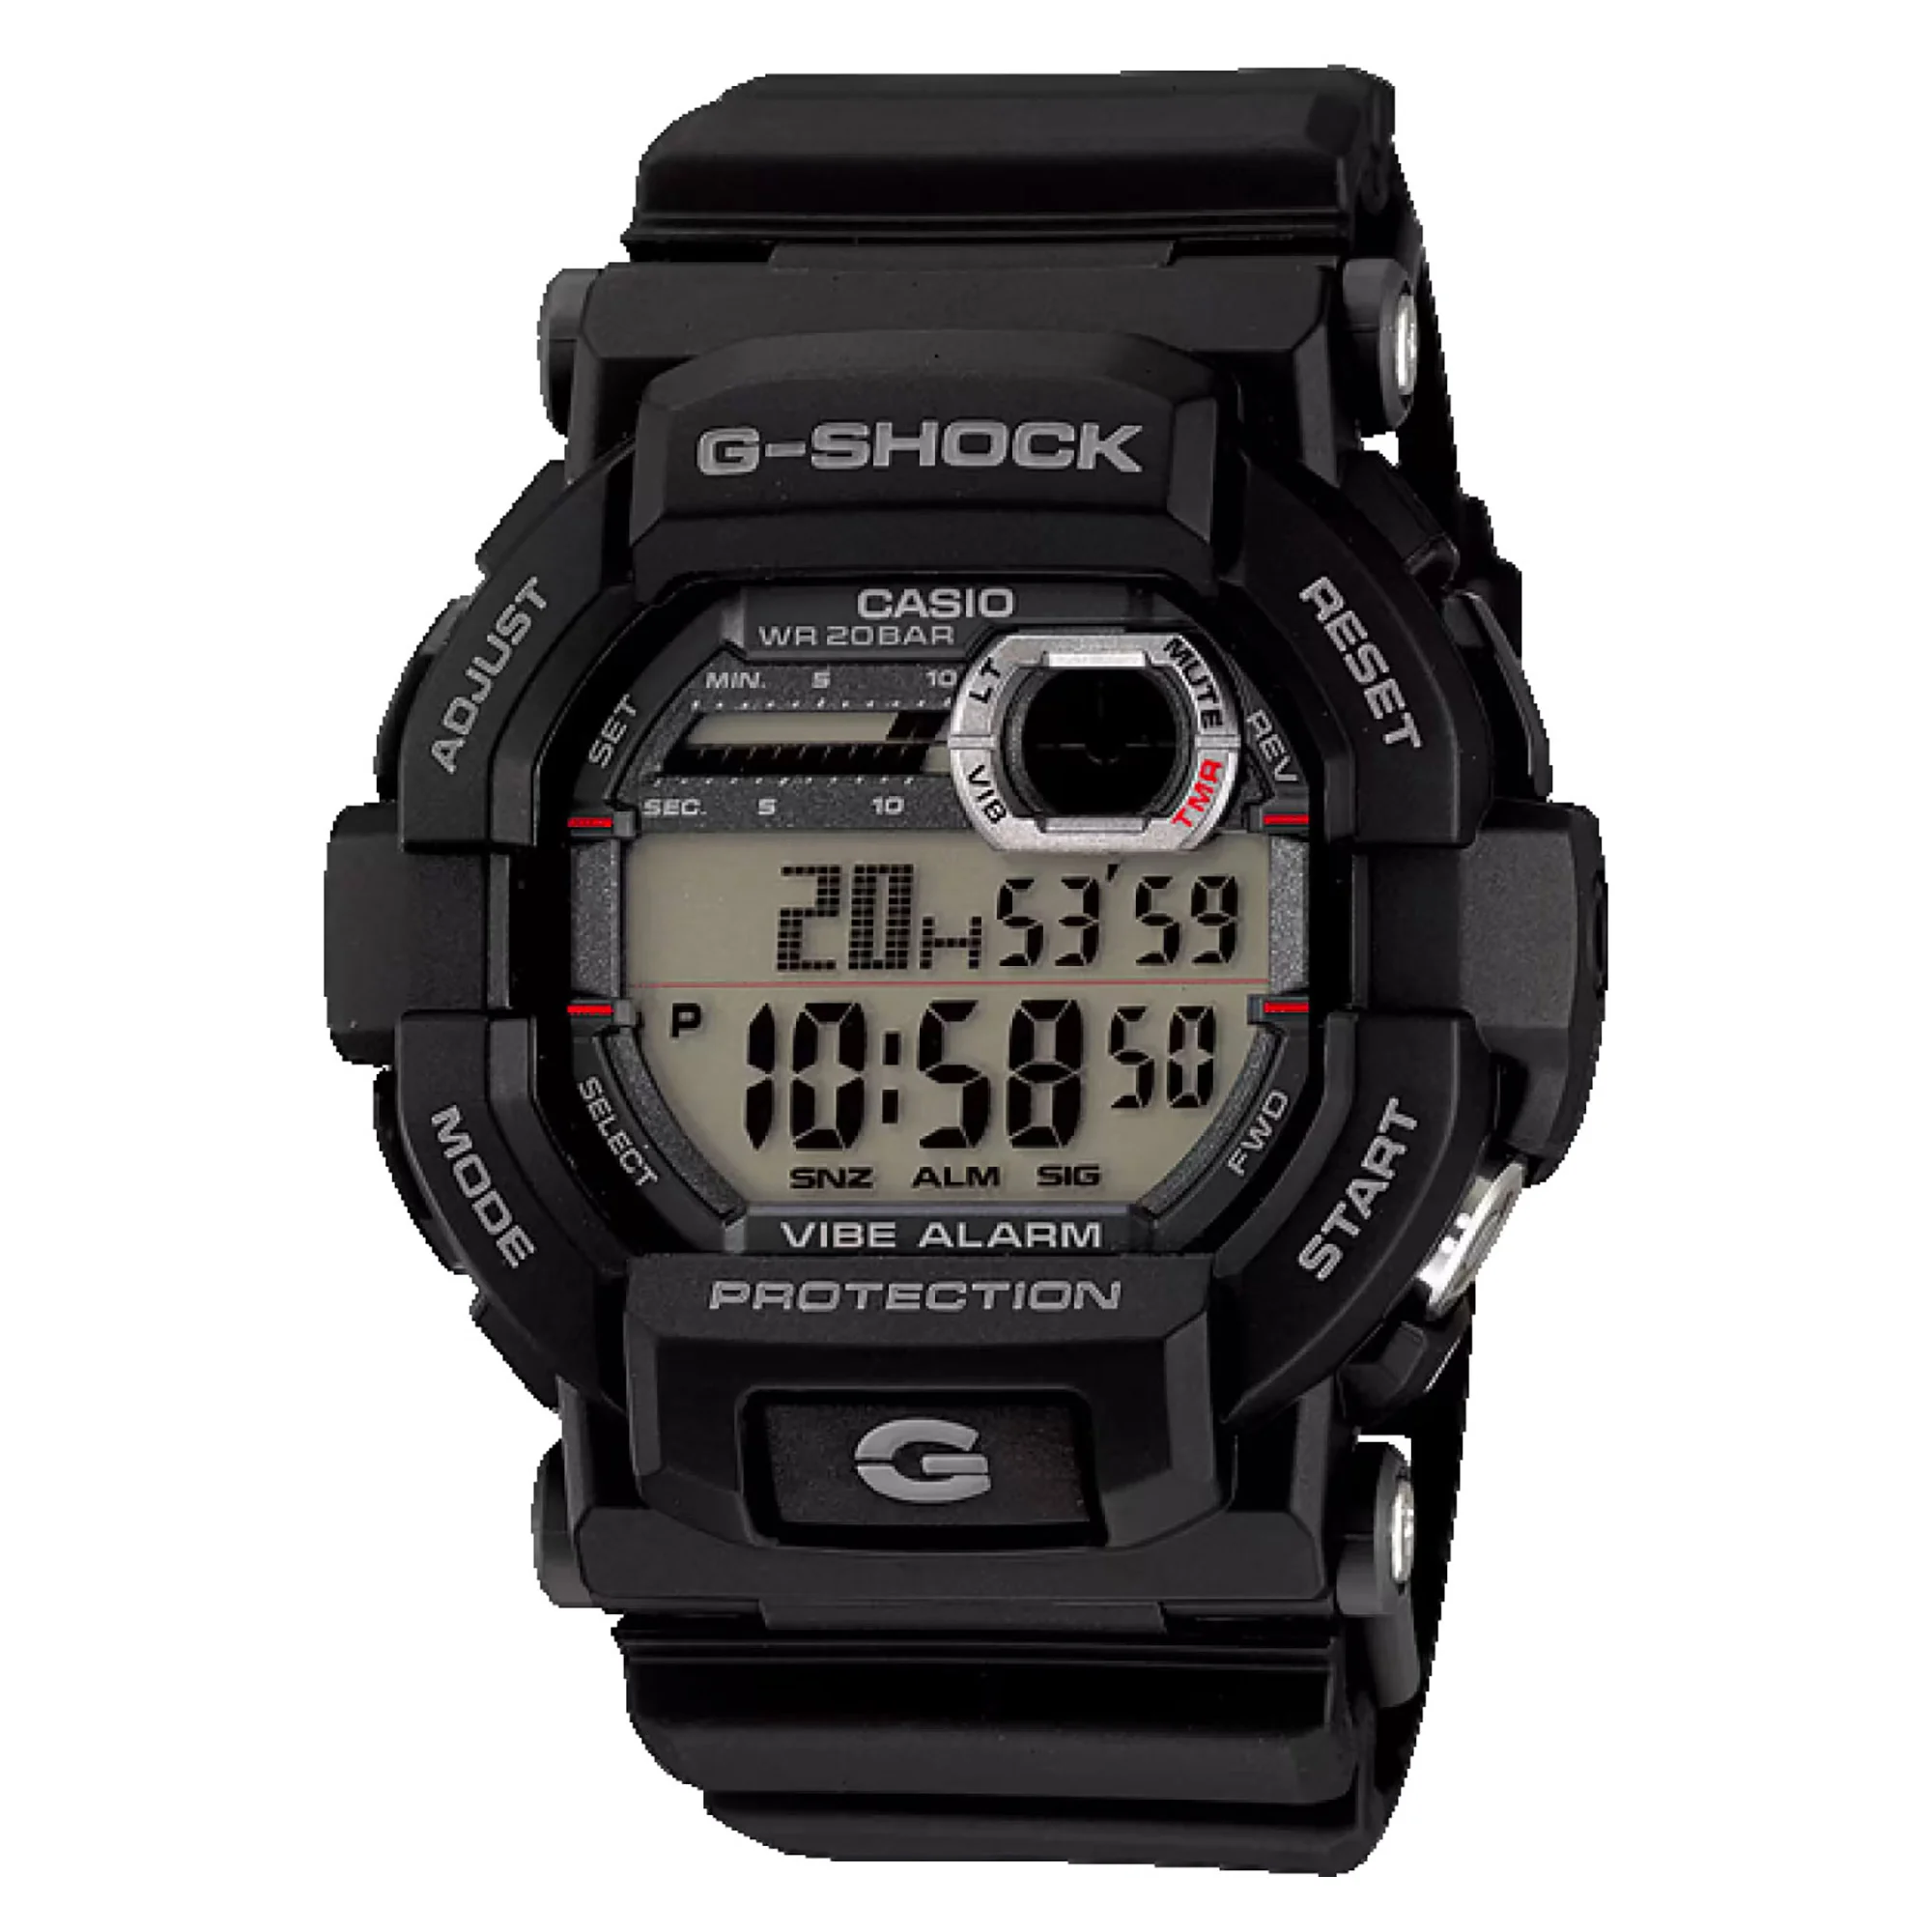 Watch CASIO G-Shock gd-350-1er